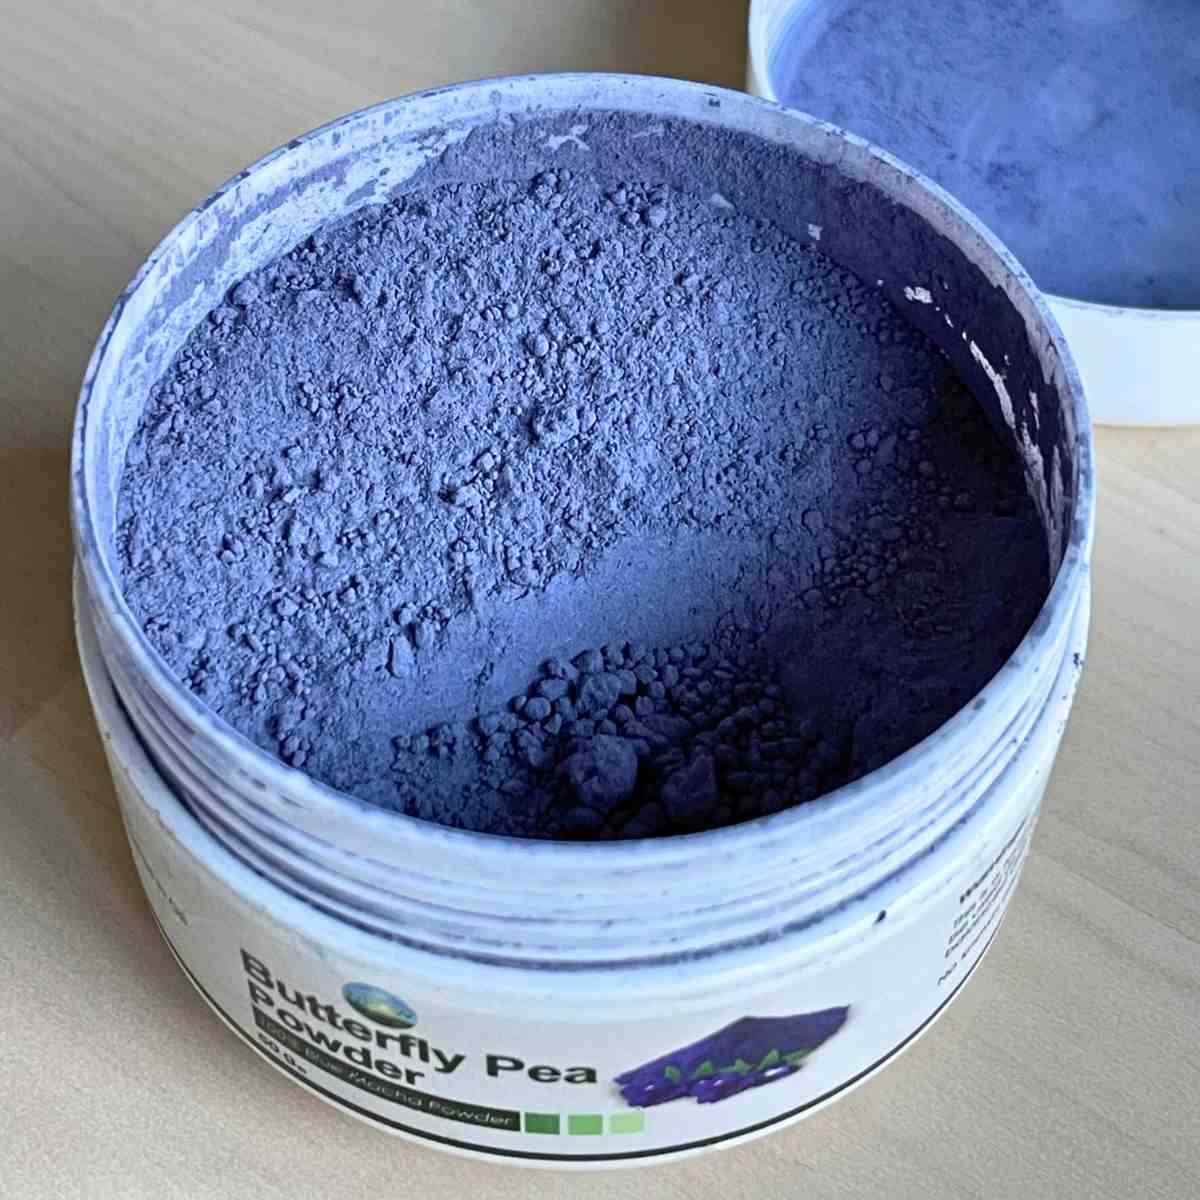 Blue pea butterfly powder